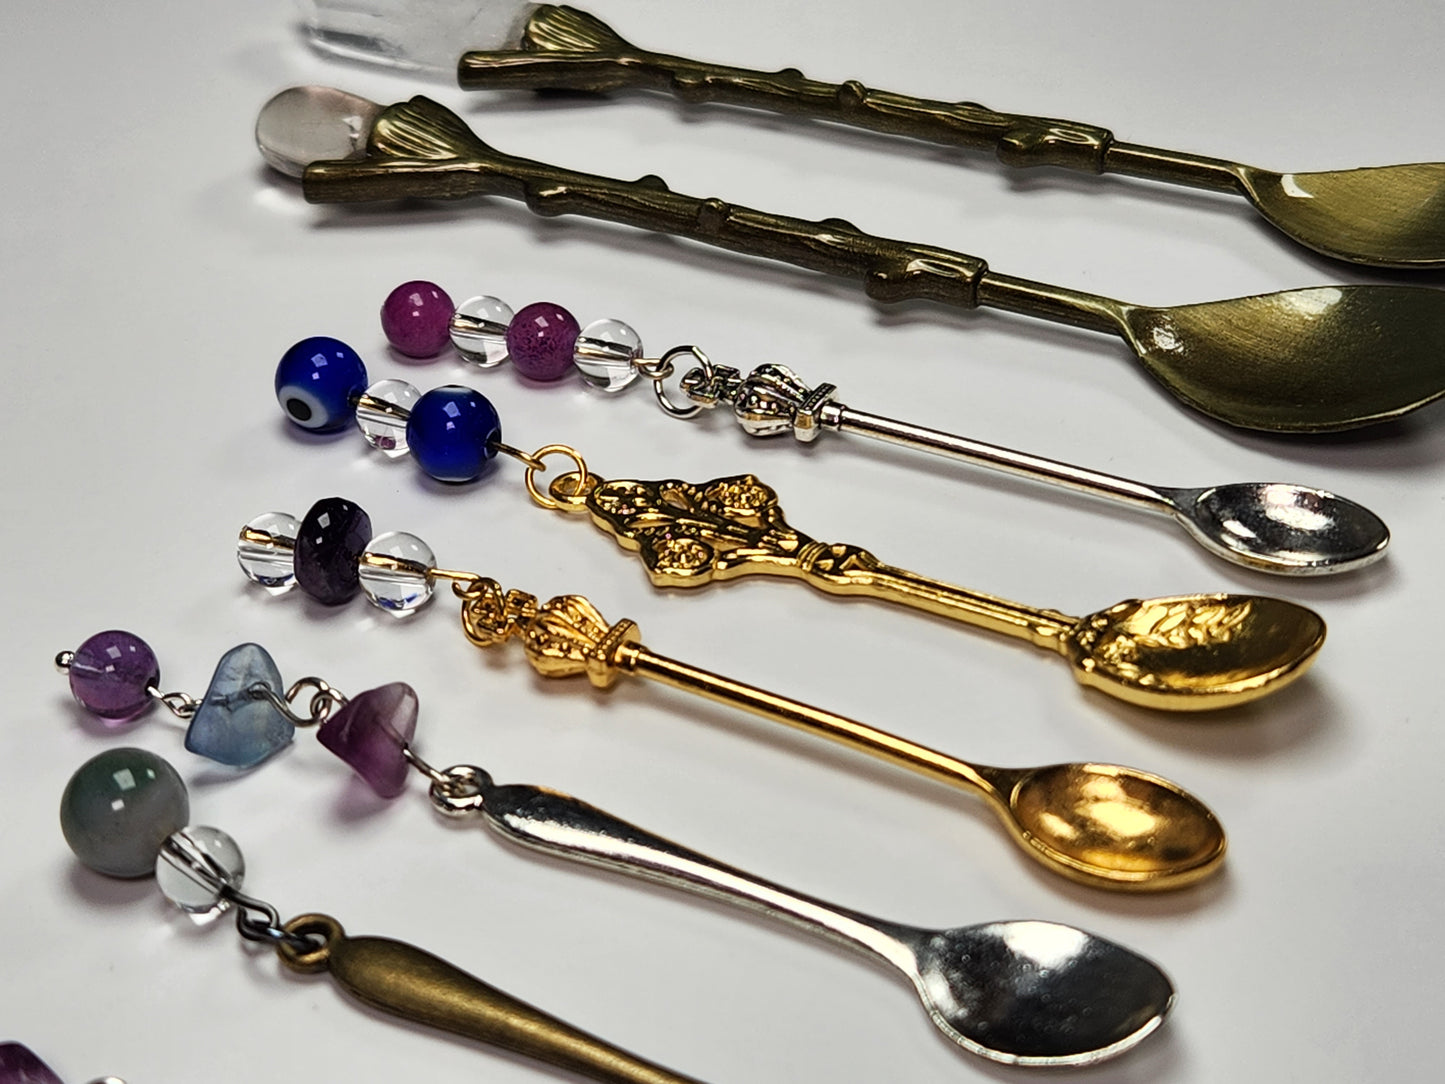 Gemstone Teaspoons, Crystal Spoons, Herb Spoons